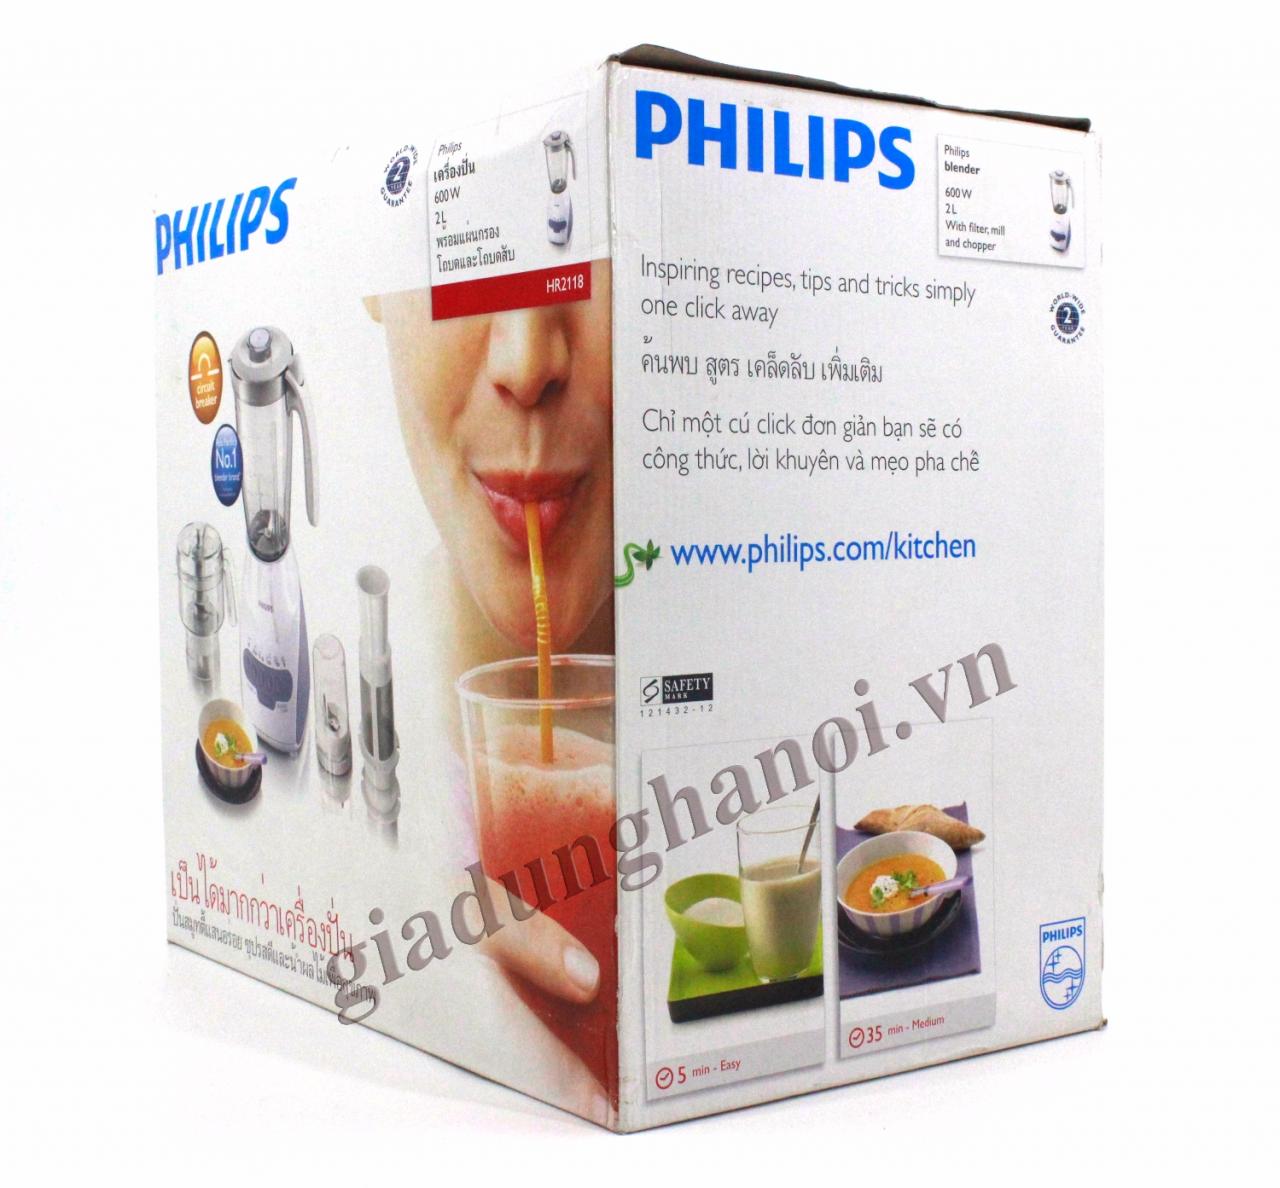 Máy xay sinh tố Philips HR2118